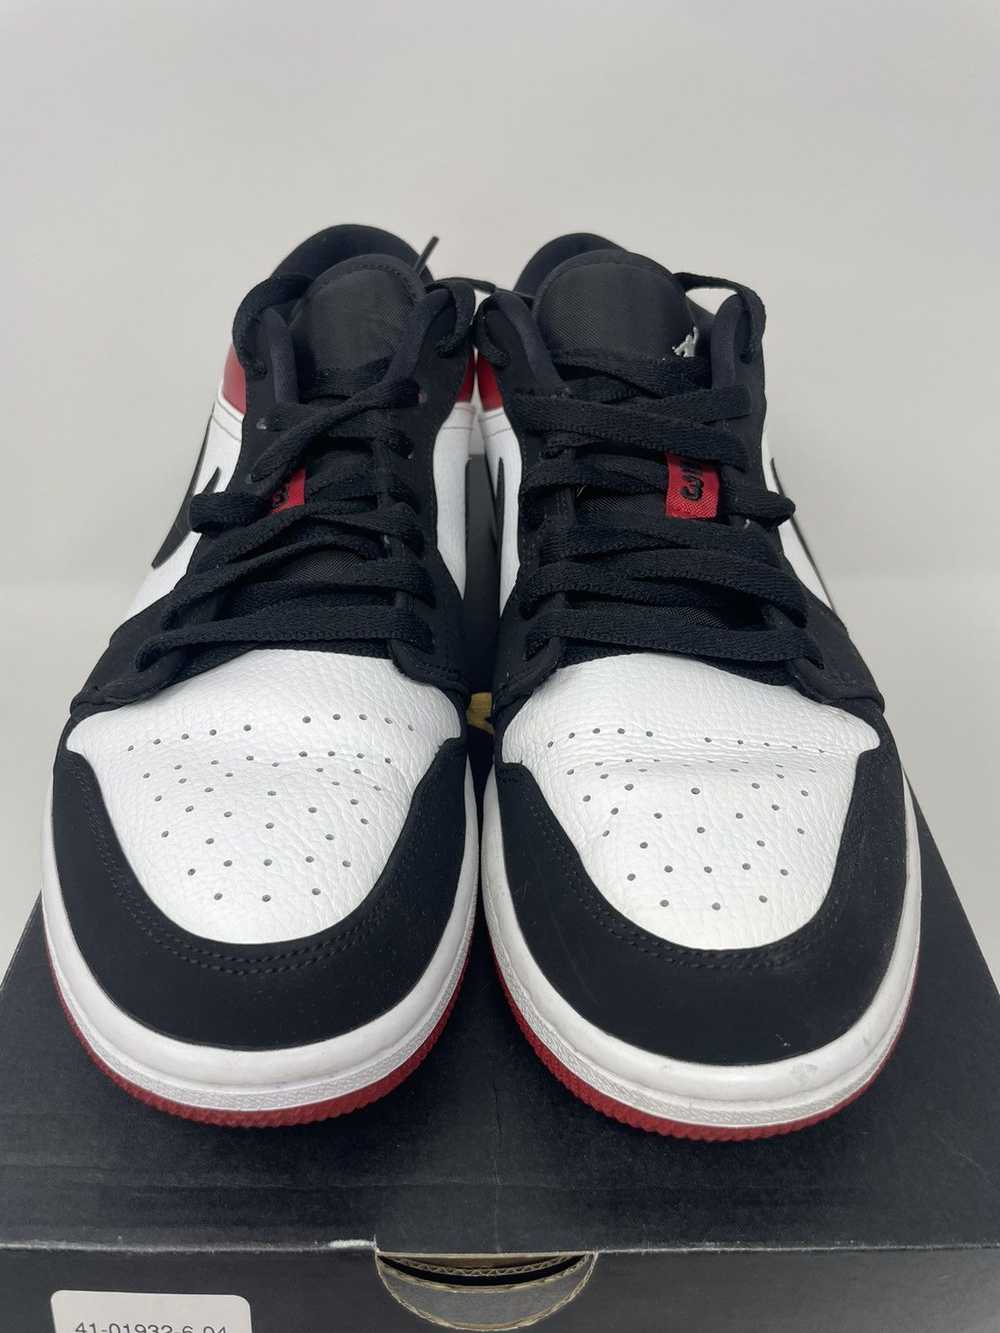 Jordan Brand Air Jordan 1 Low Black Toe - image 4